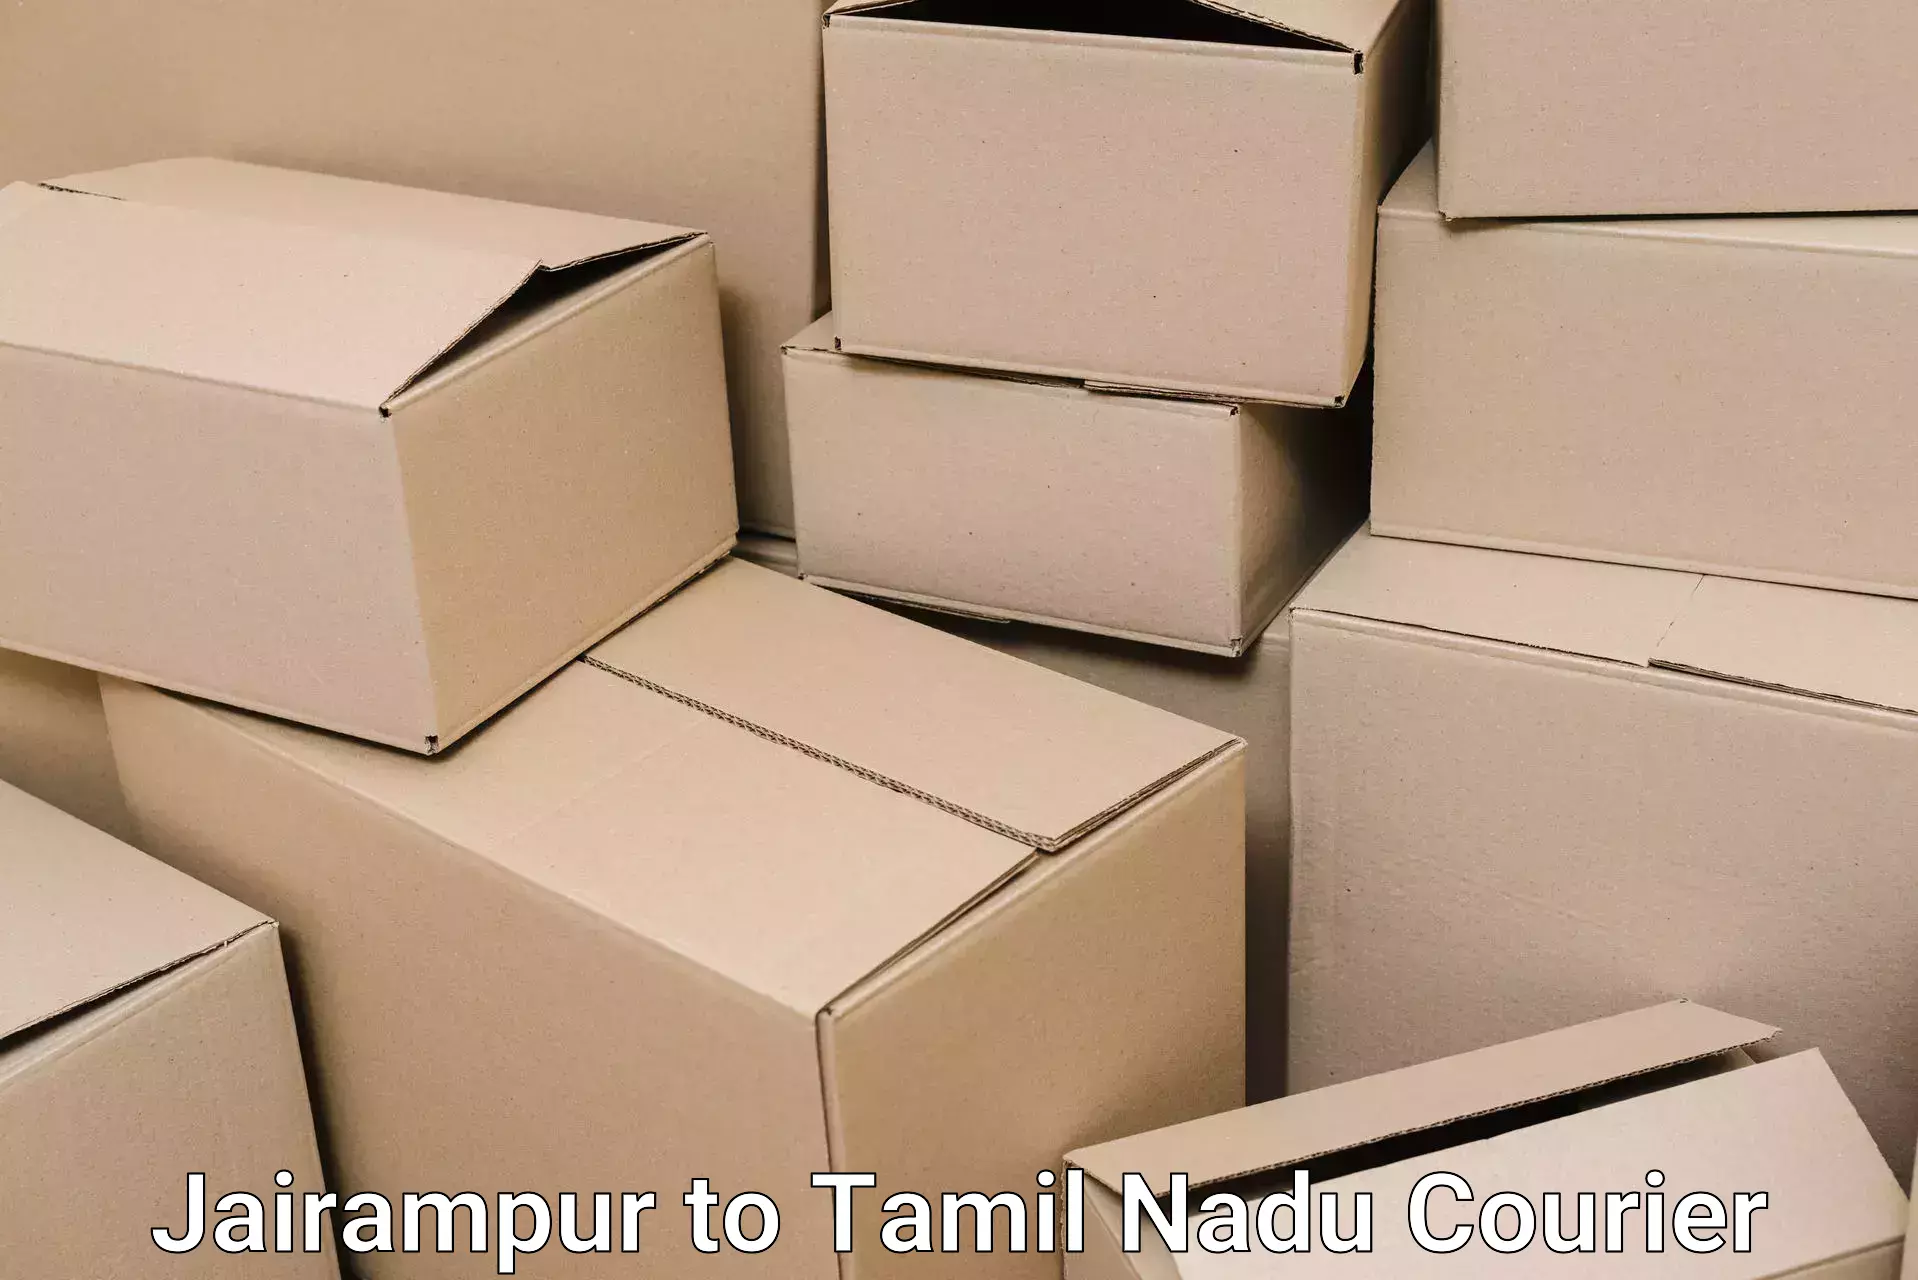 Furniture relocation experts Jairampur to Thirukkattupalli